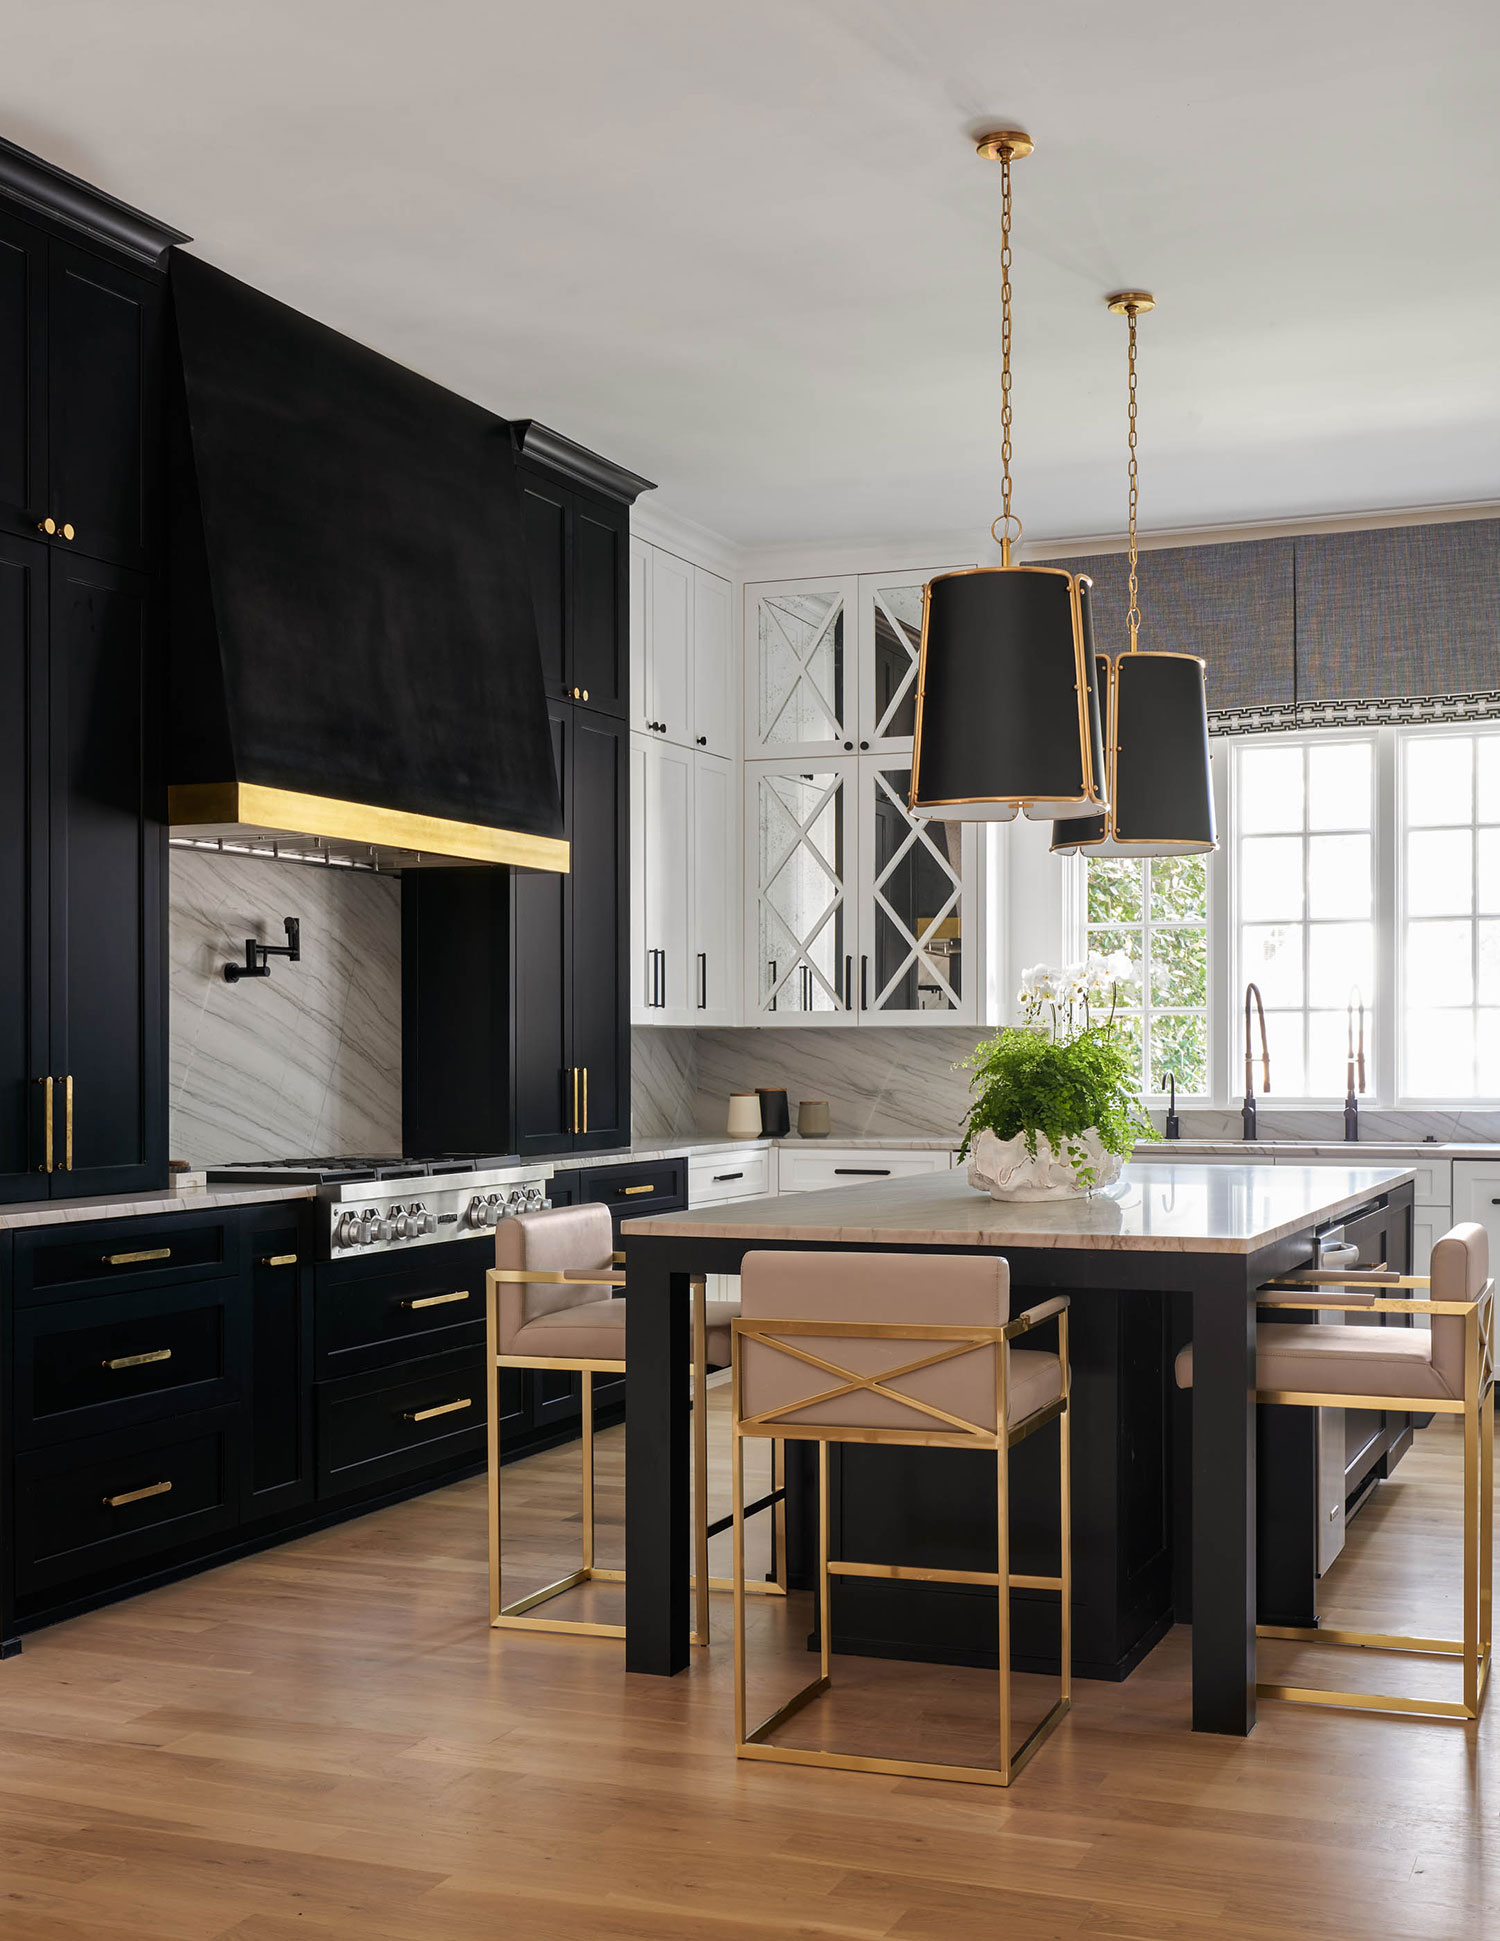 kitchen design ideas black kitchen with brass details